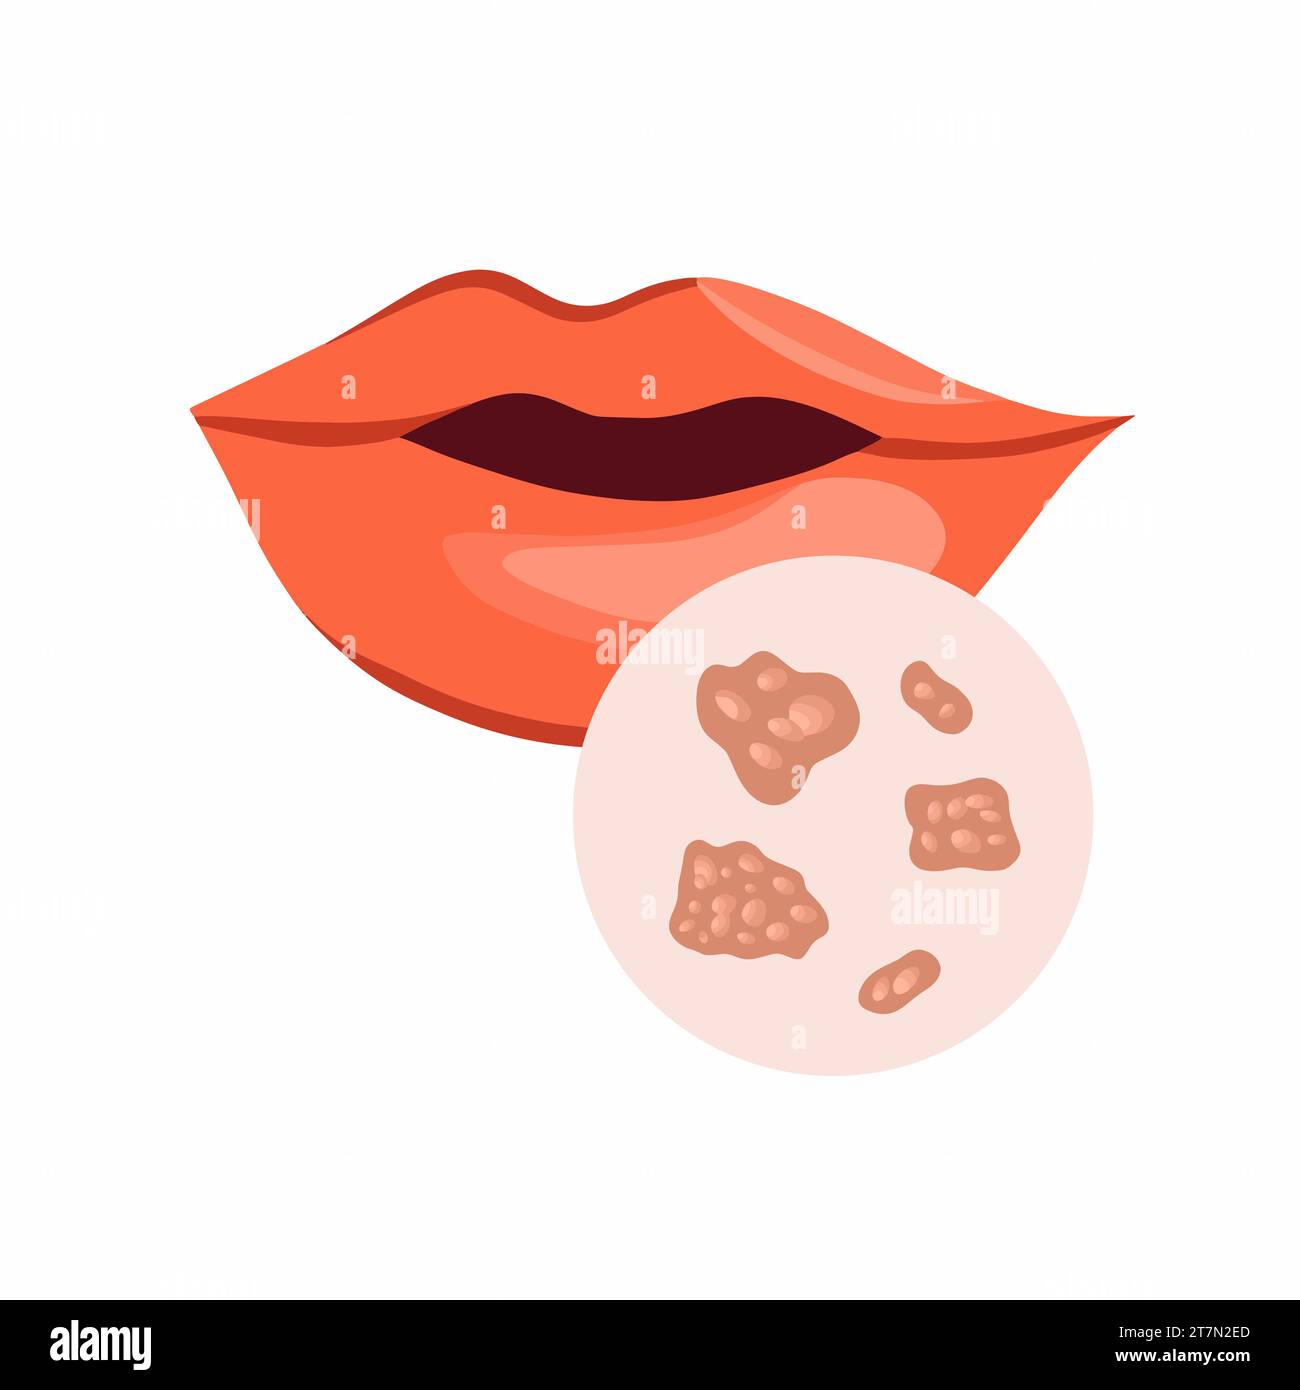 Vektorisolierte Darstellung von Herpes an den Lippen. Infektion mit dem Herpesvirus. Verminderte Immunität. Stock Vektor